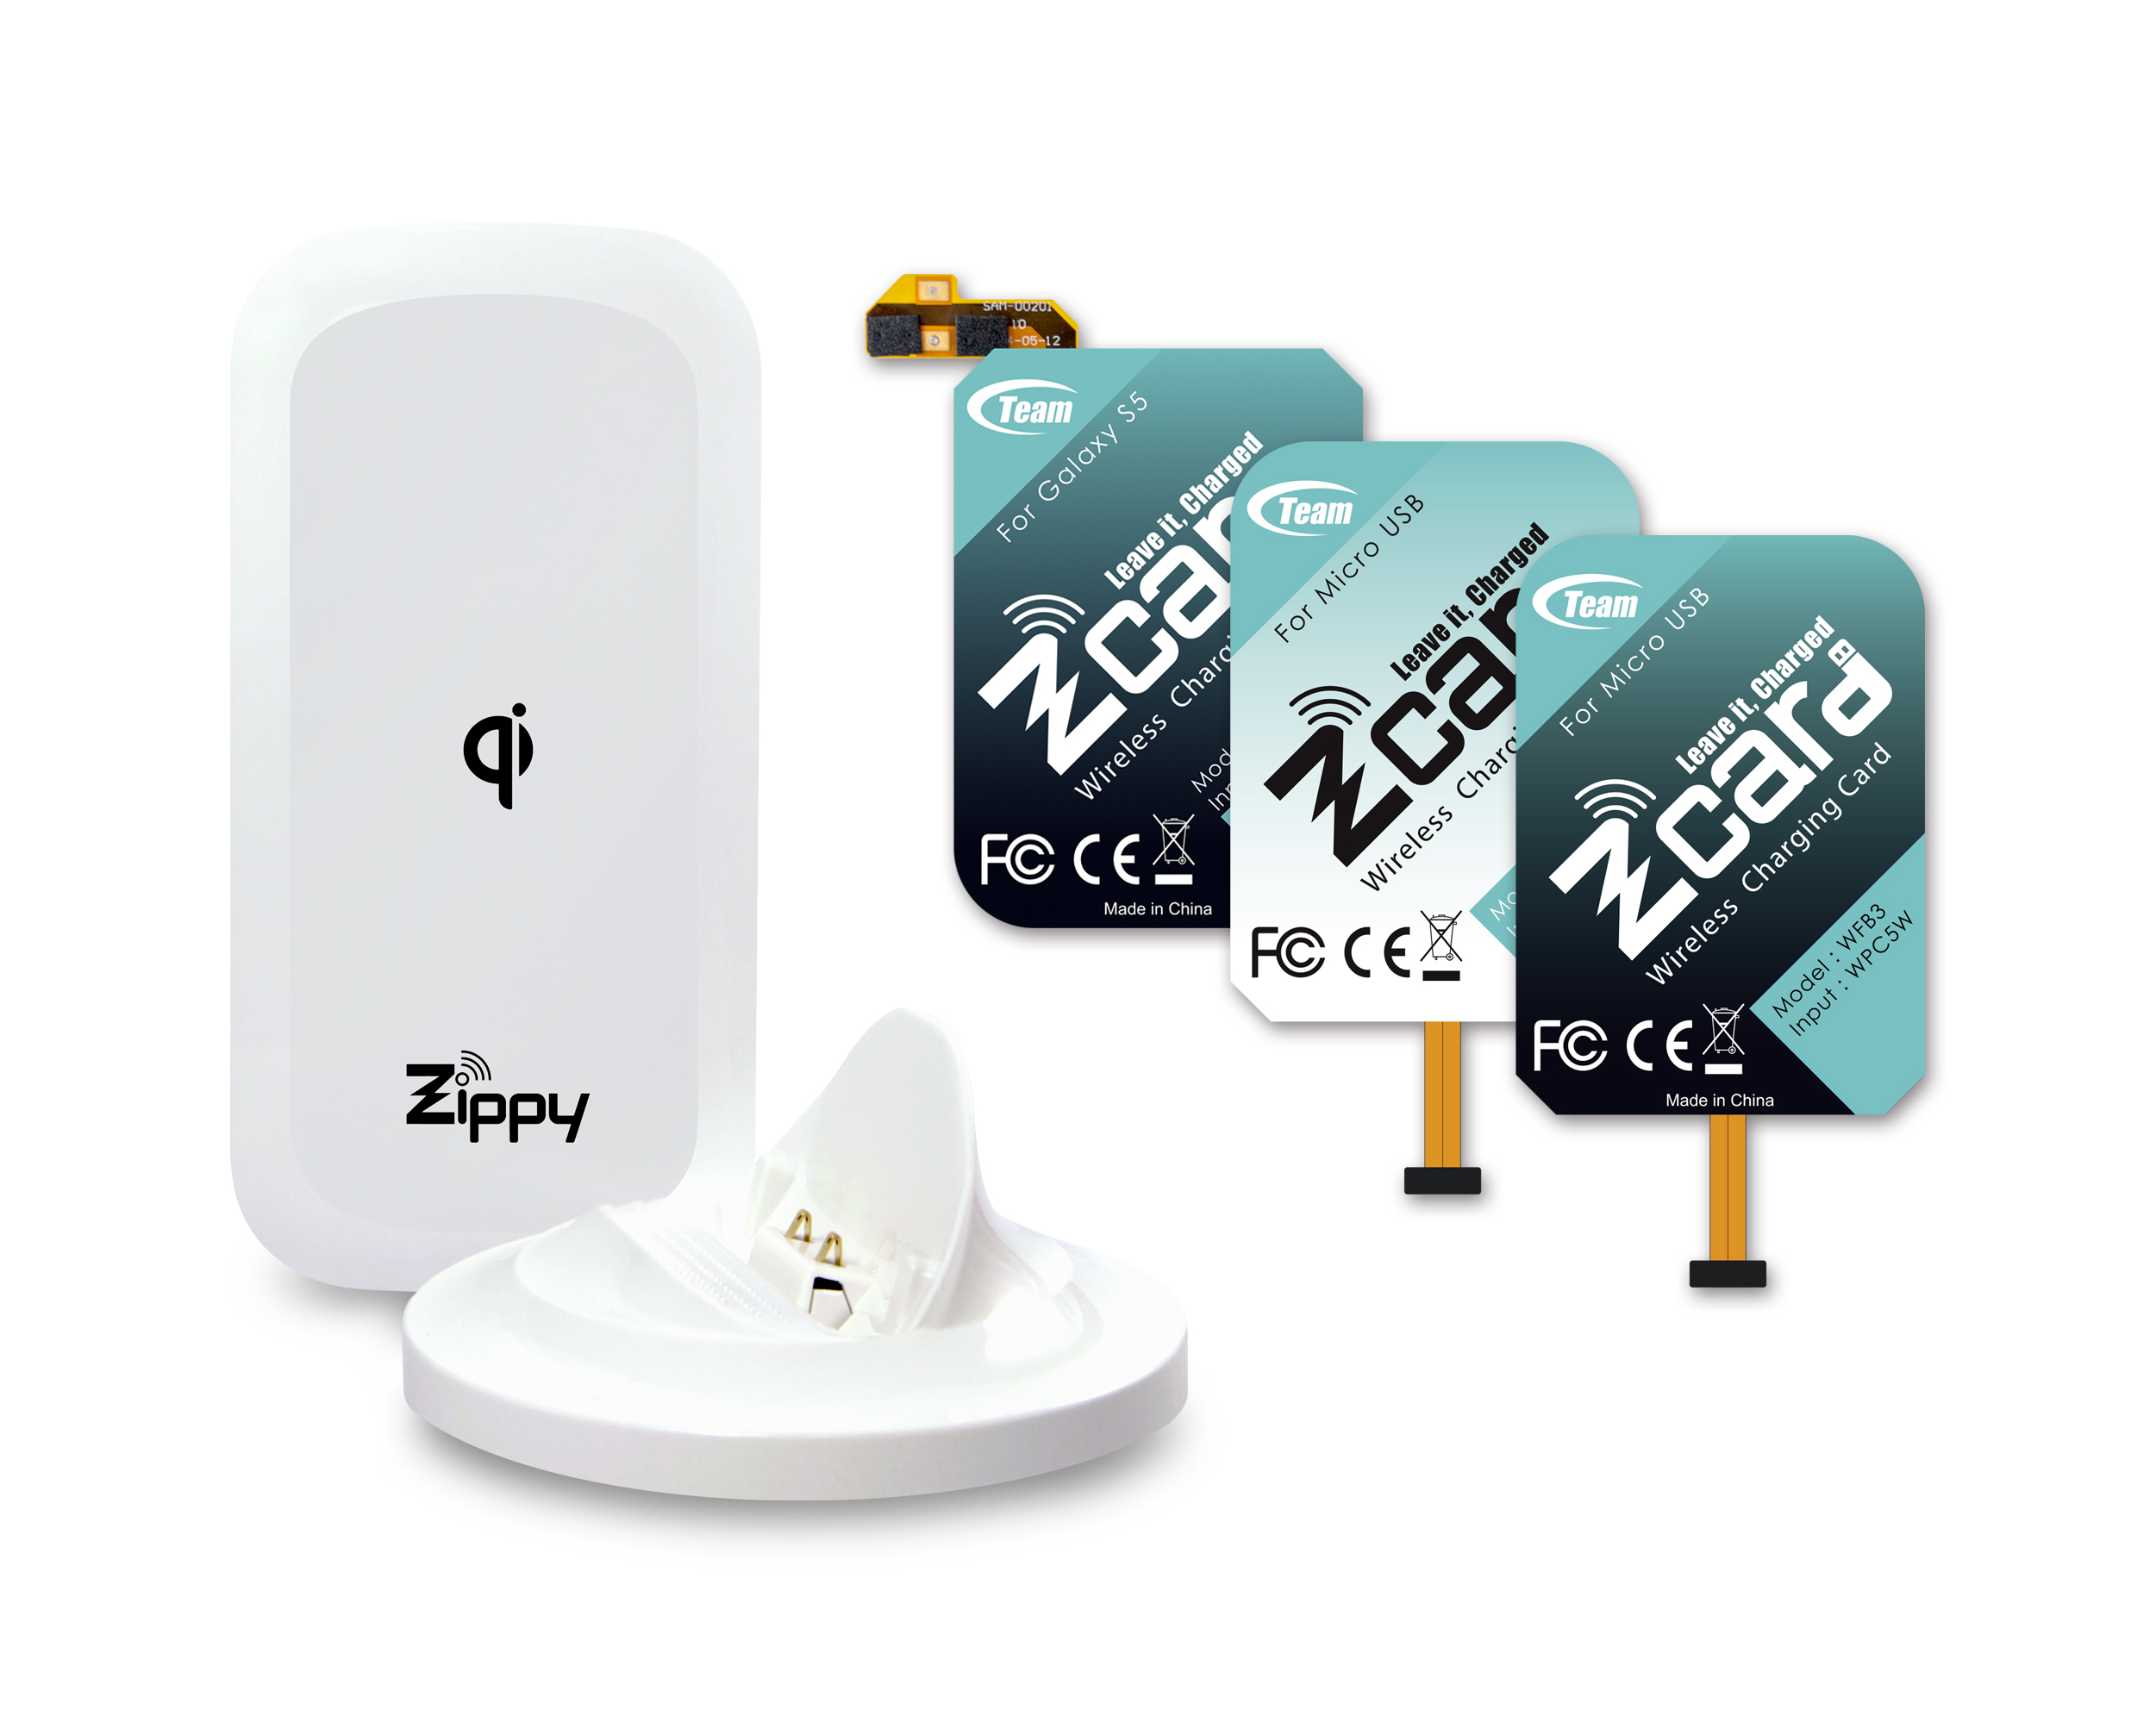 十銓科技引領潮流 開創簡約無線智慧新生活 全新無線充電產品線─ Zippy 及 Zcard晶耀上市